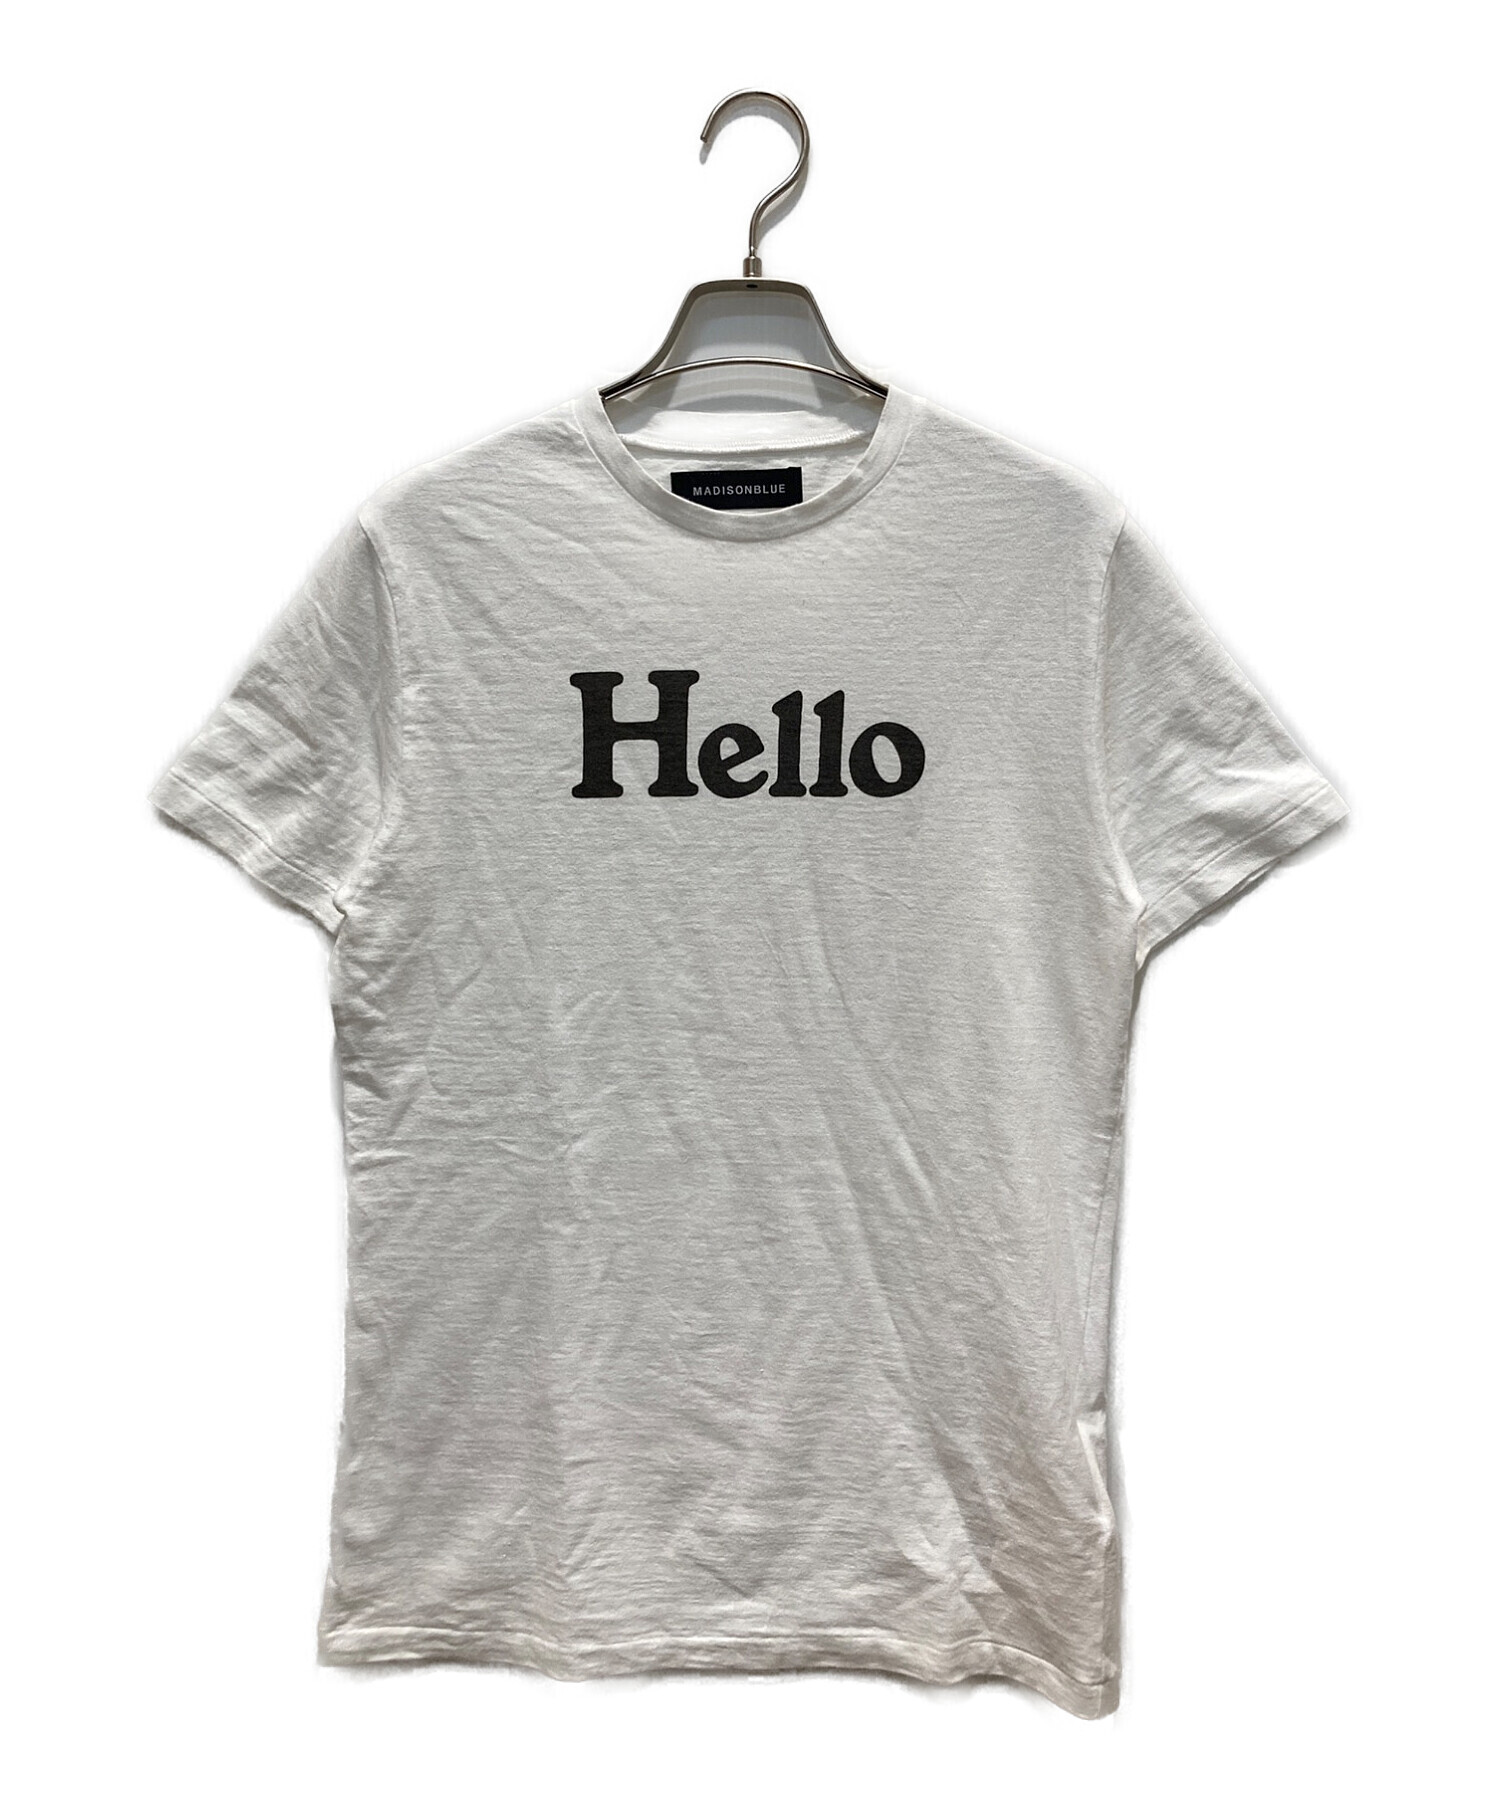 新品タグ付　madisonblue HELLO T shirt